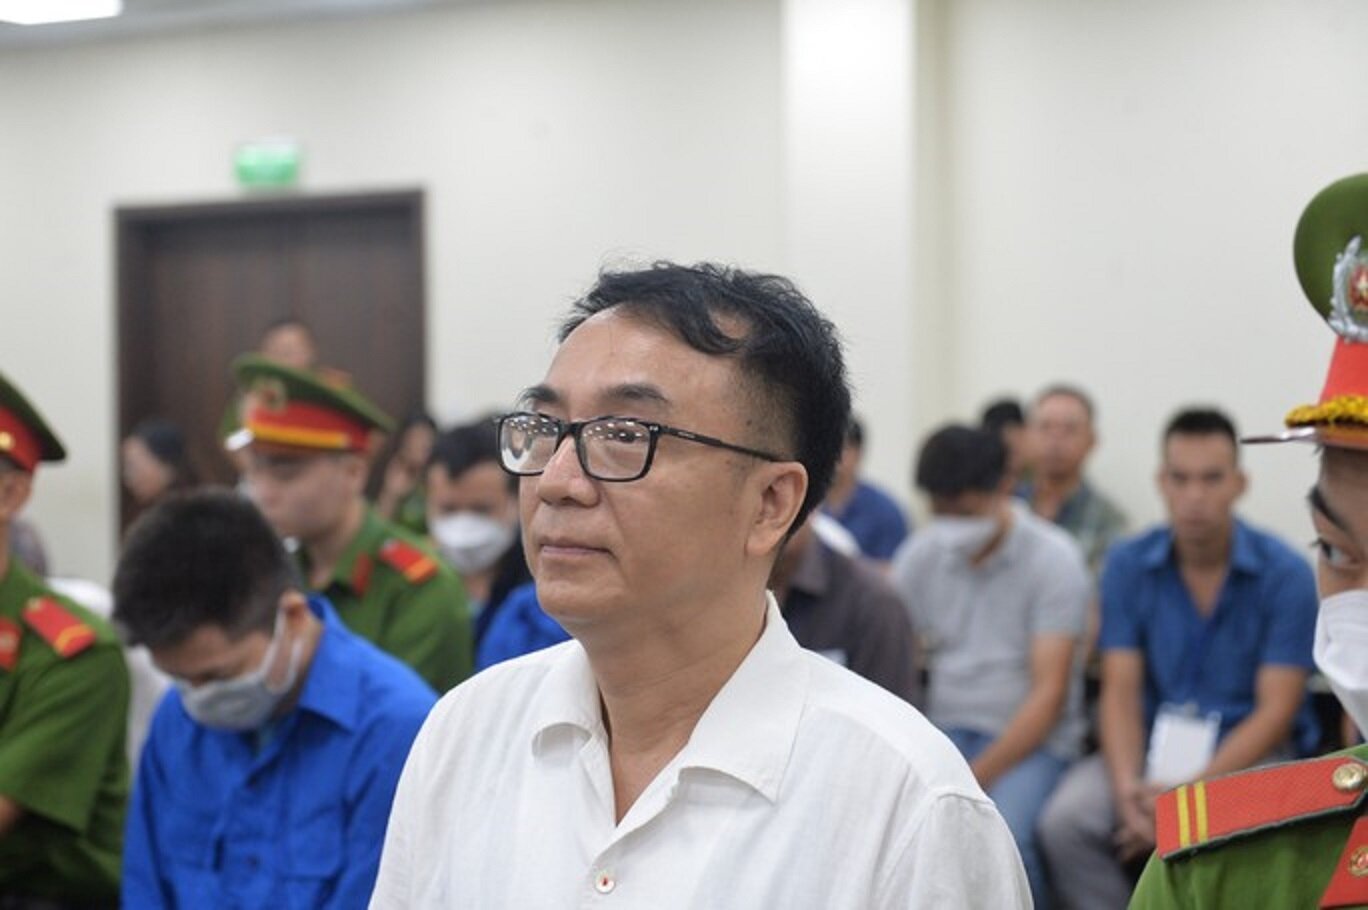 Cựu cục phó Cục Quản lý thị trường Hà Nội bị đưa ra xét xử về tội nhận hối lộ. Ảnh: Hữu Hưng